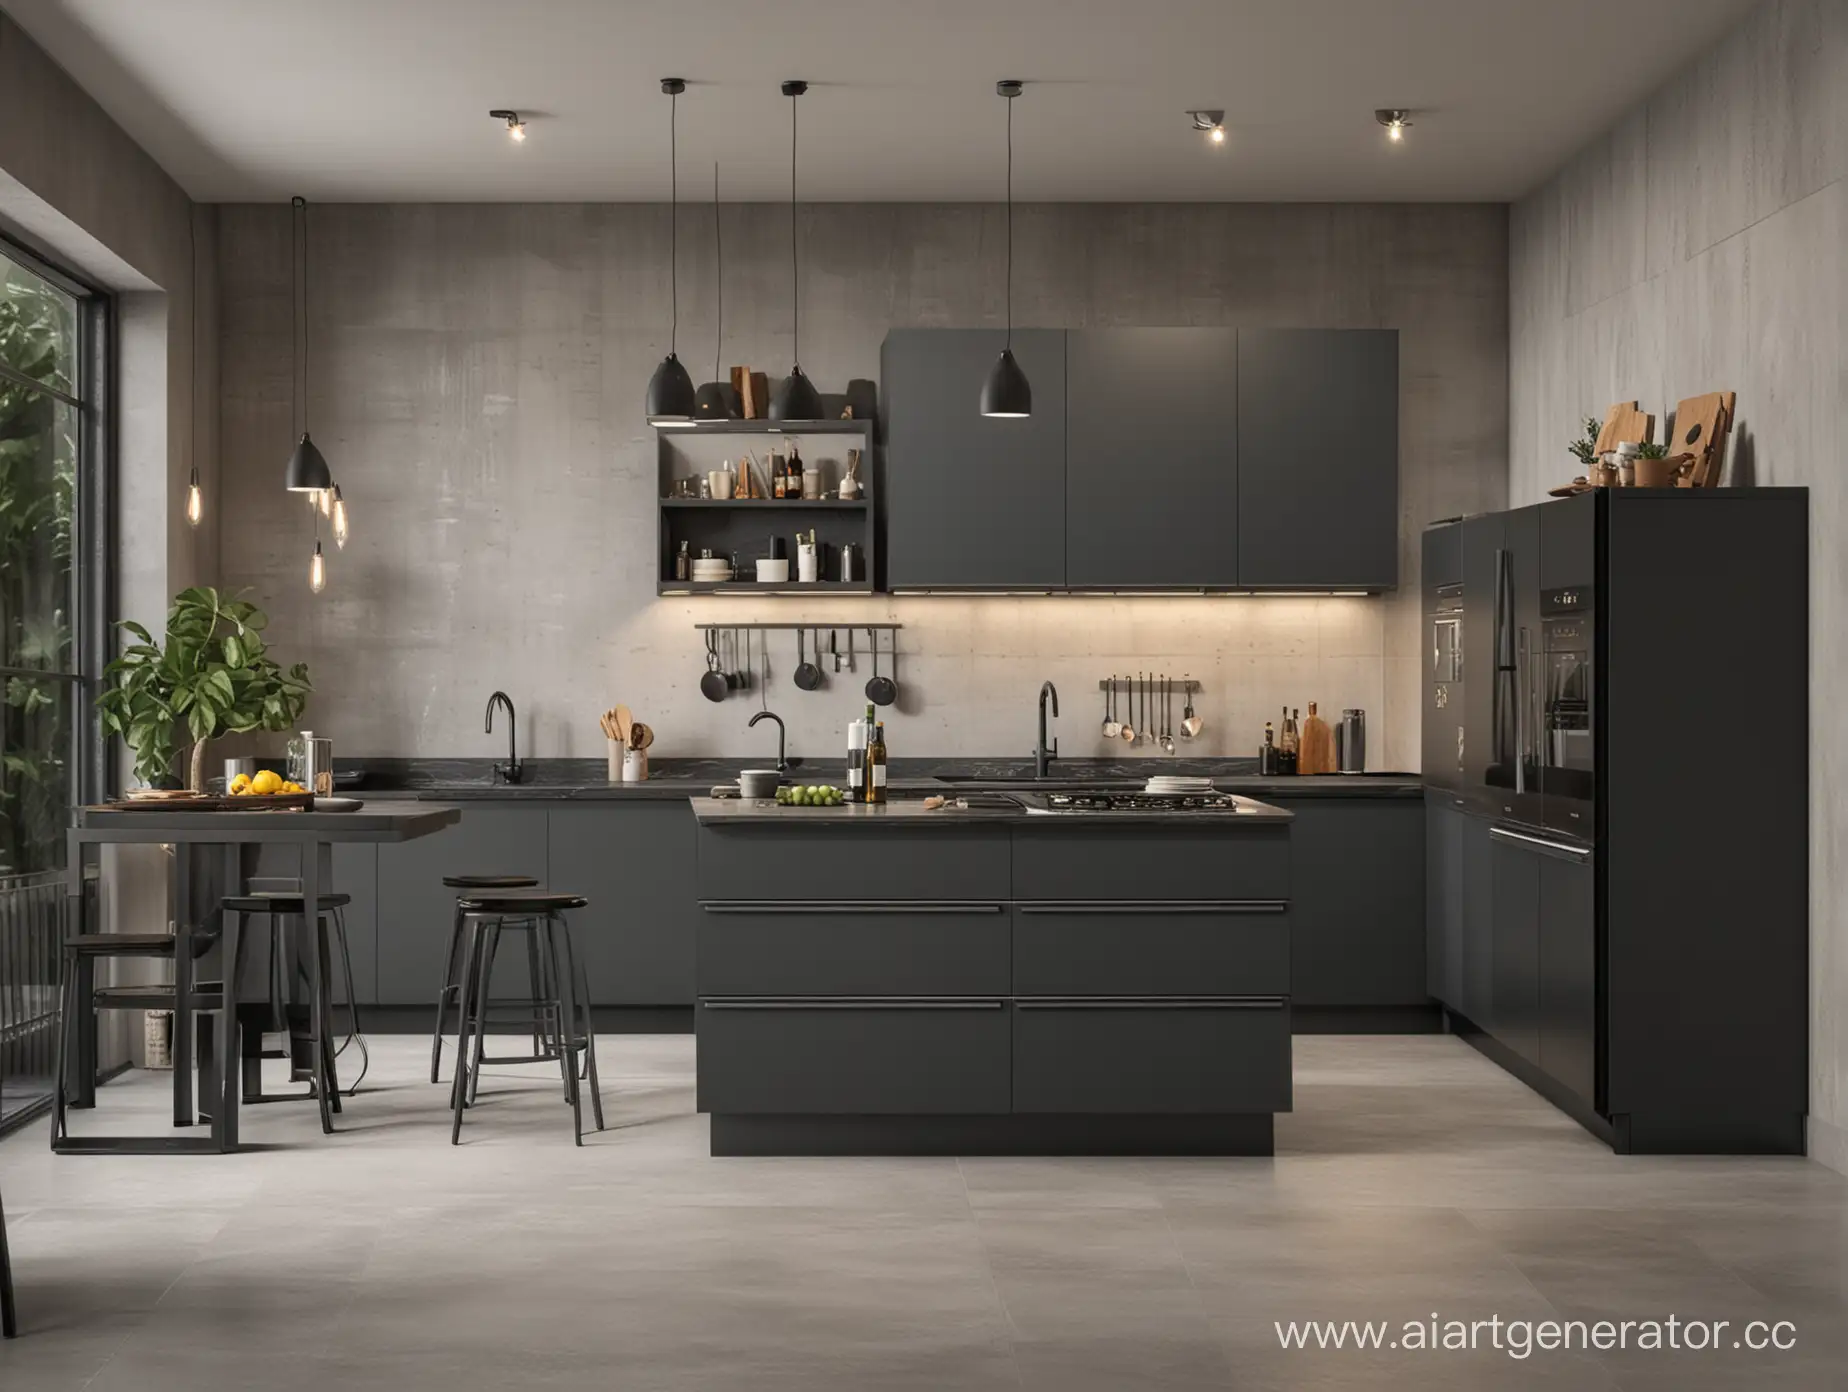 Modern-Loft-Style-Kitchen-with-Dark-Gray-Theme-and-Sleek-Design